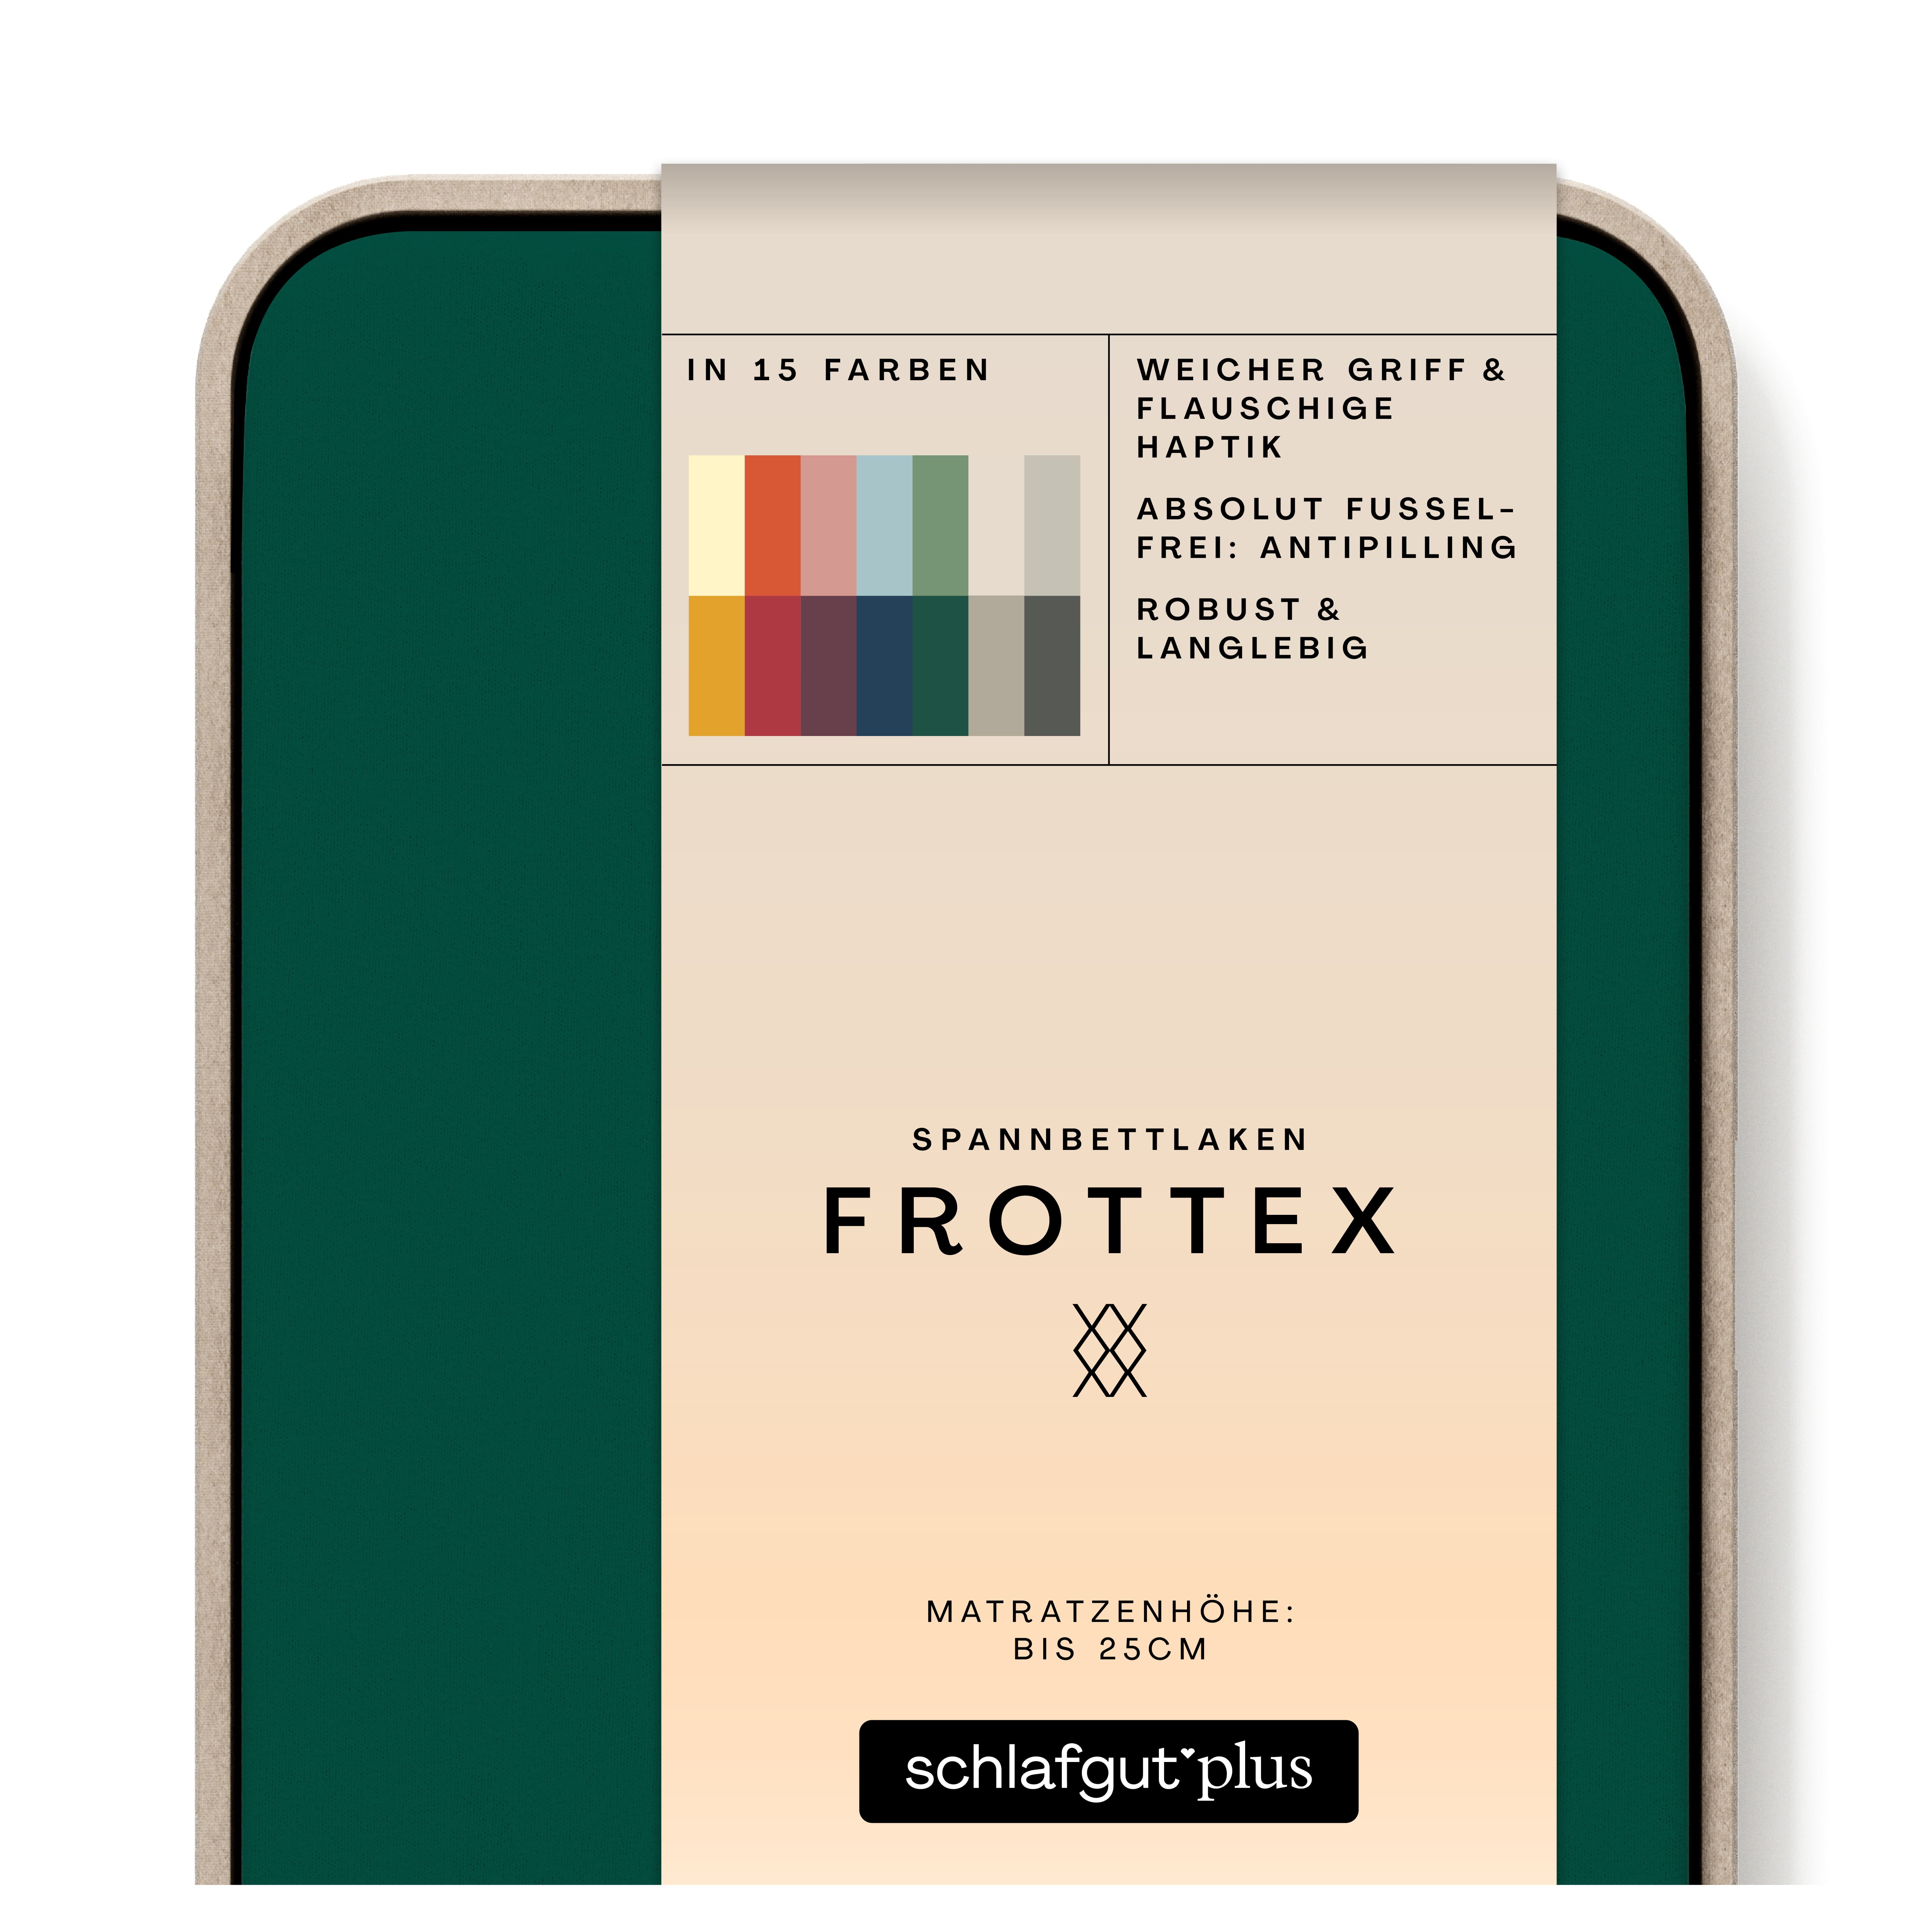 Das Produktbild vom Spannbettlaken der Reihe Frottex in Farbe green deep von Schlafgut